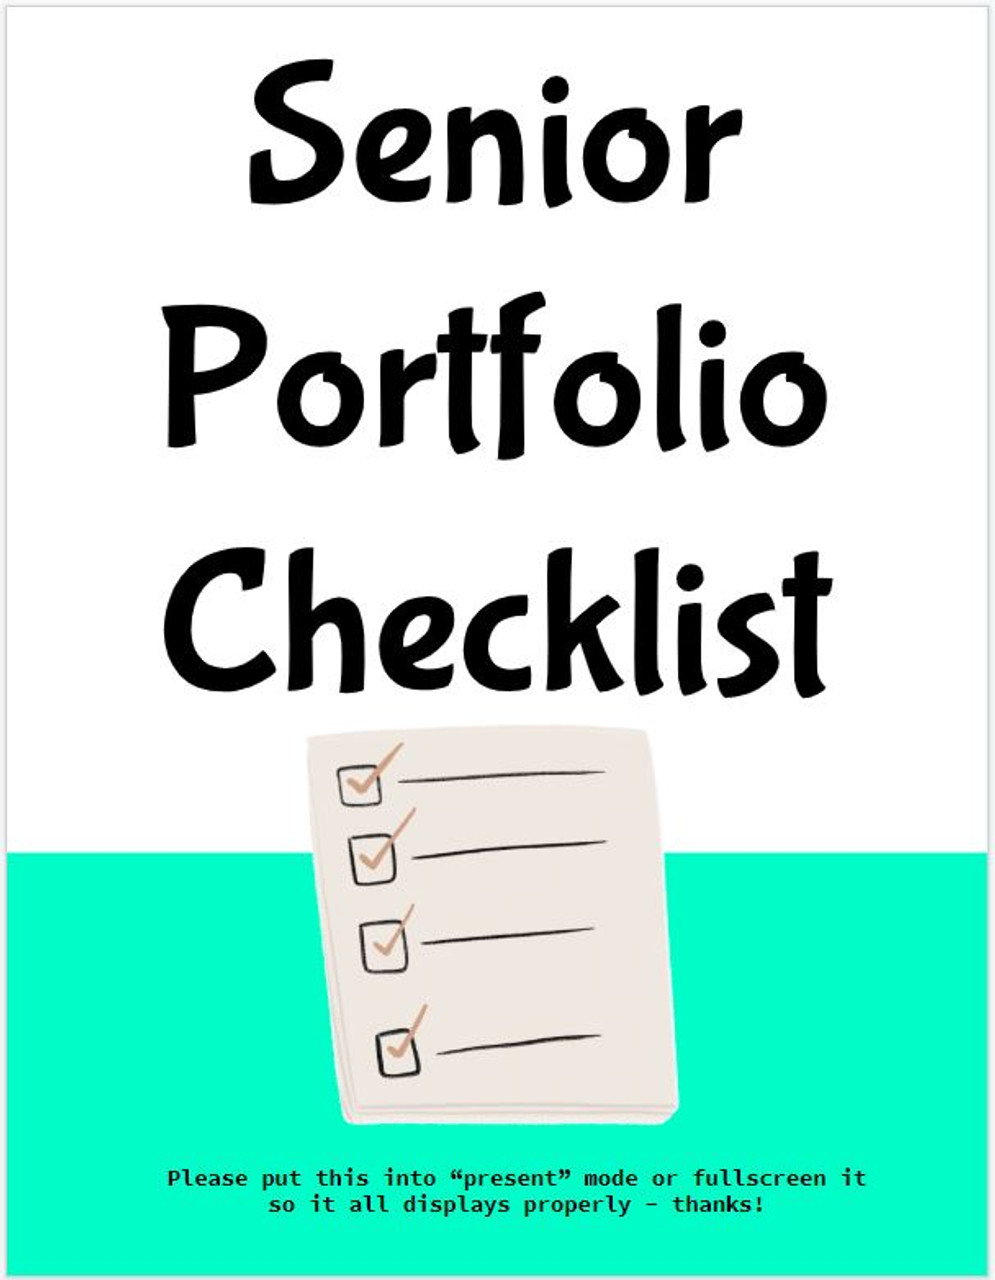 Senior Portfolio Checklist